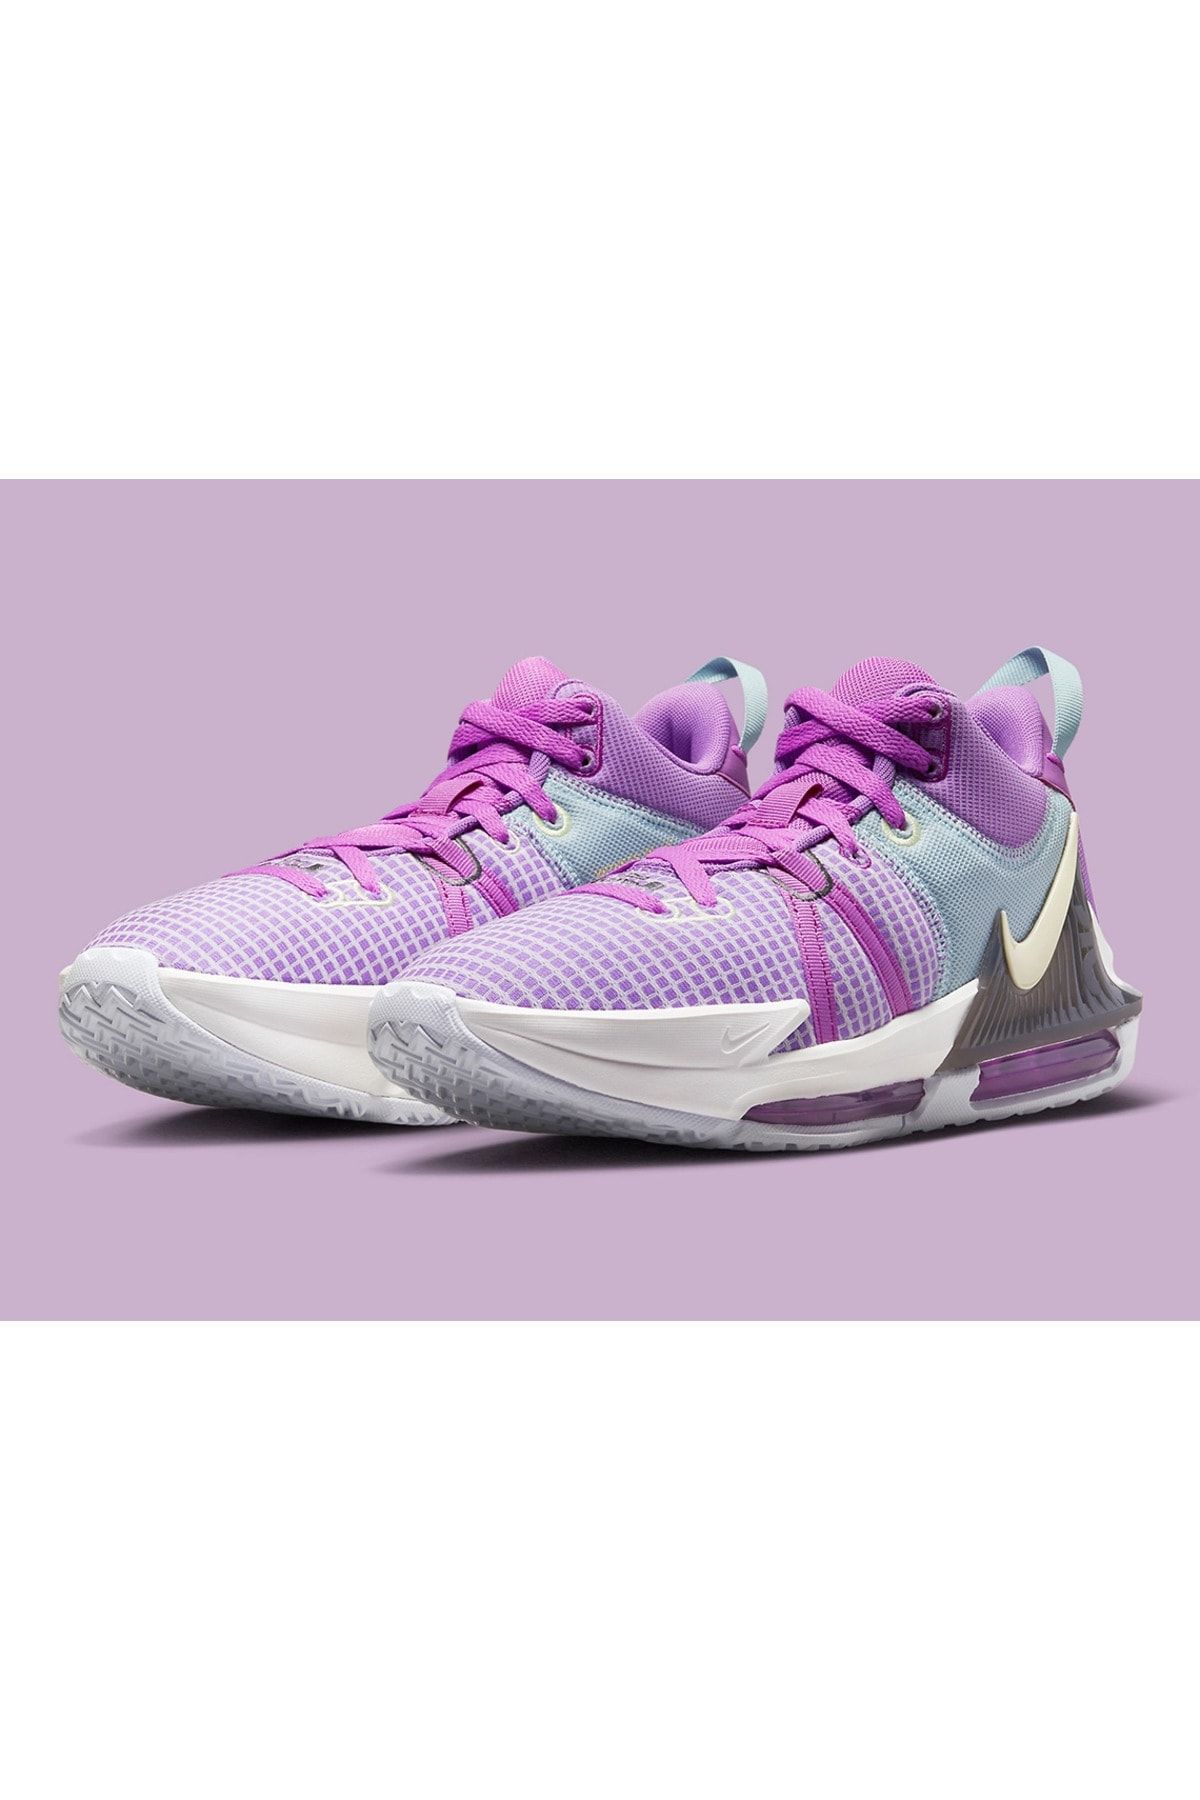 Nike Lebron Witness VII Basketbol Ayakkabısı